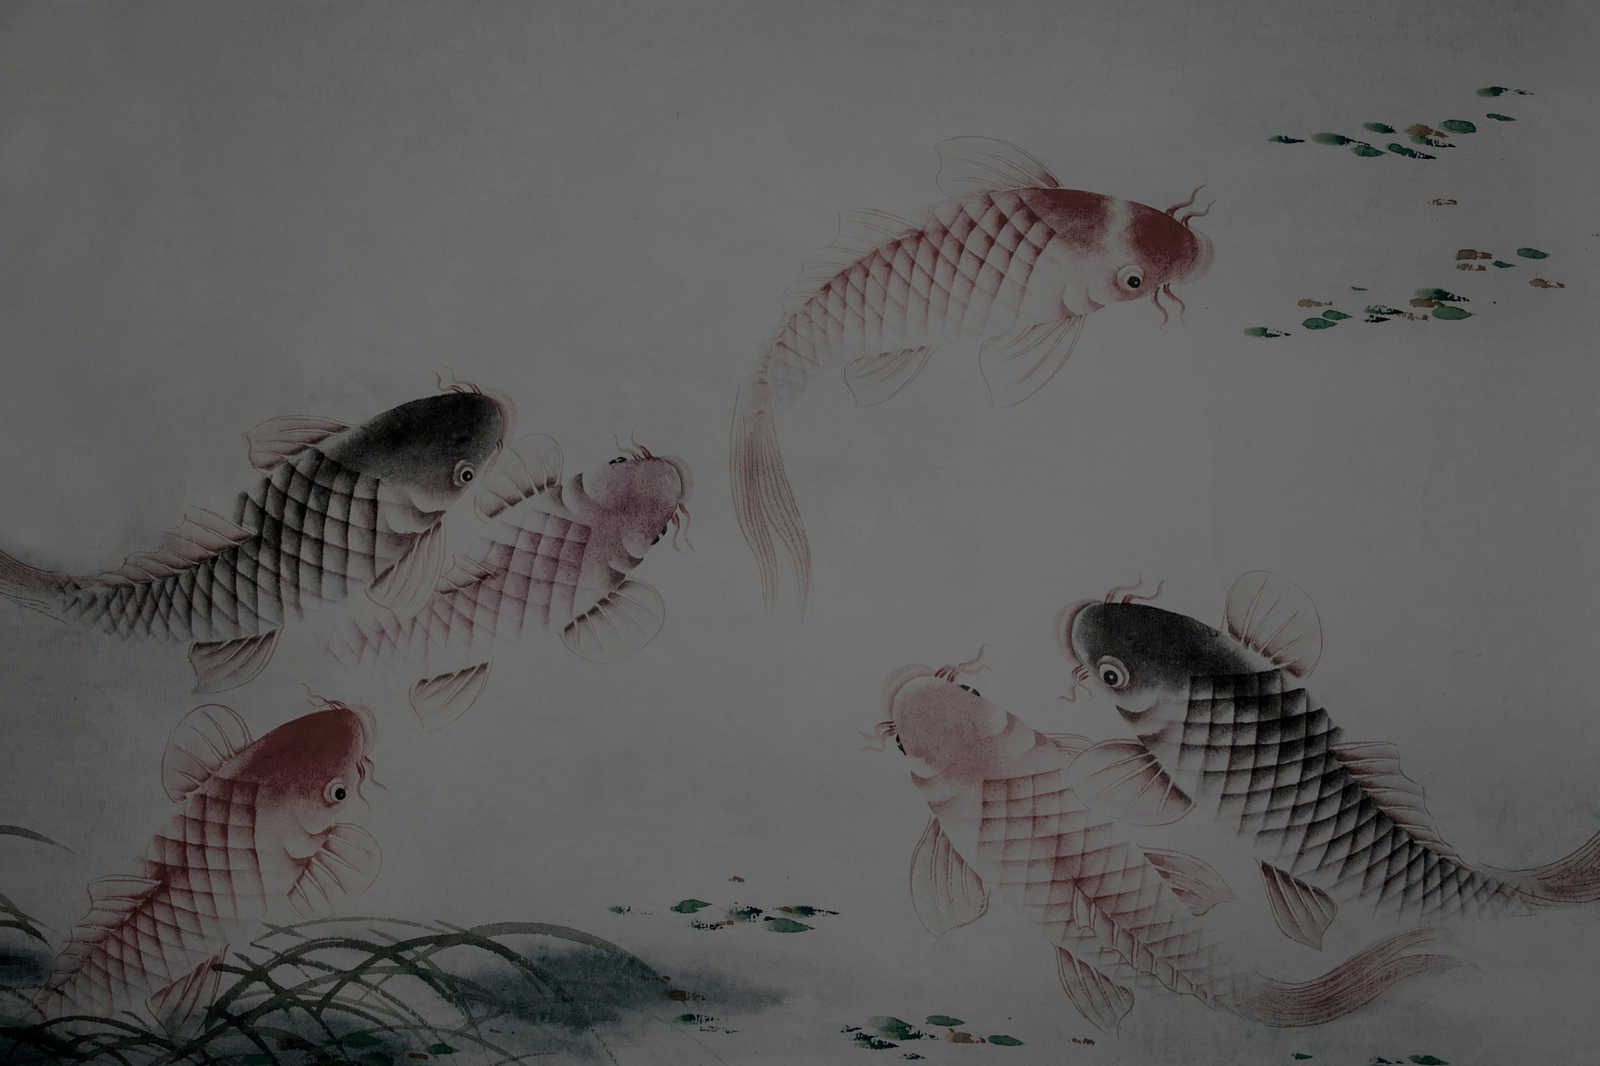             Leinwandbild Asia Style mit Koi-Teich | grau – 1,20 m x 0,80 m
        